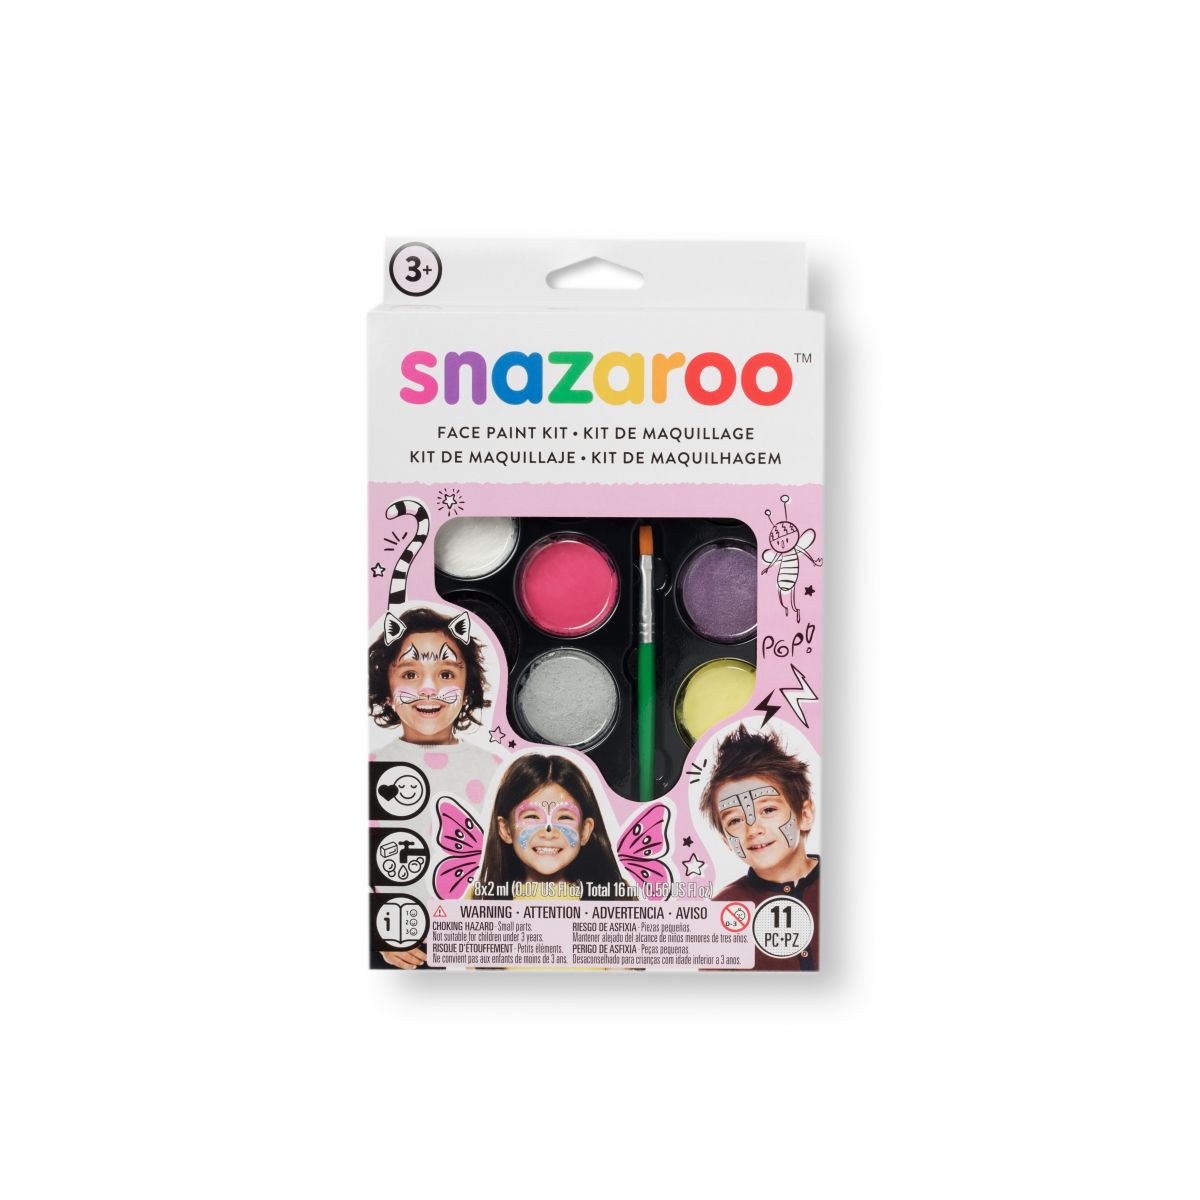 Farba do malowania twarzy Snazaroo zestaw dla dziewczynek 8 kolor. (1172031)